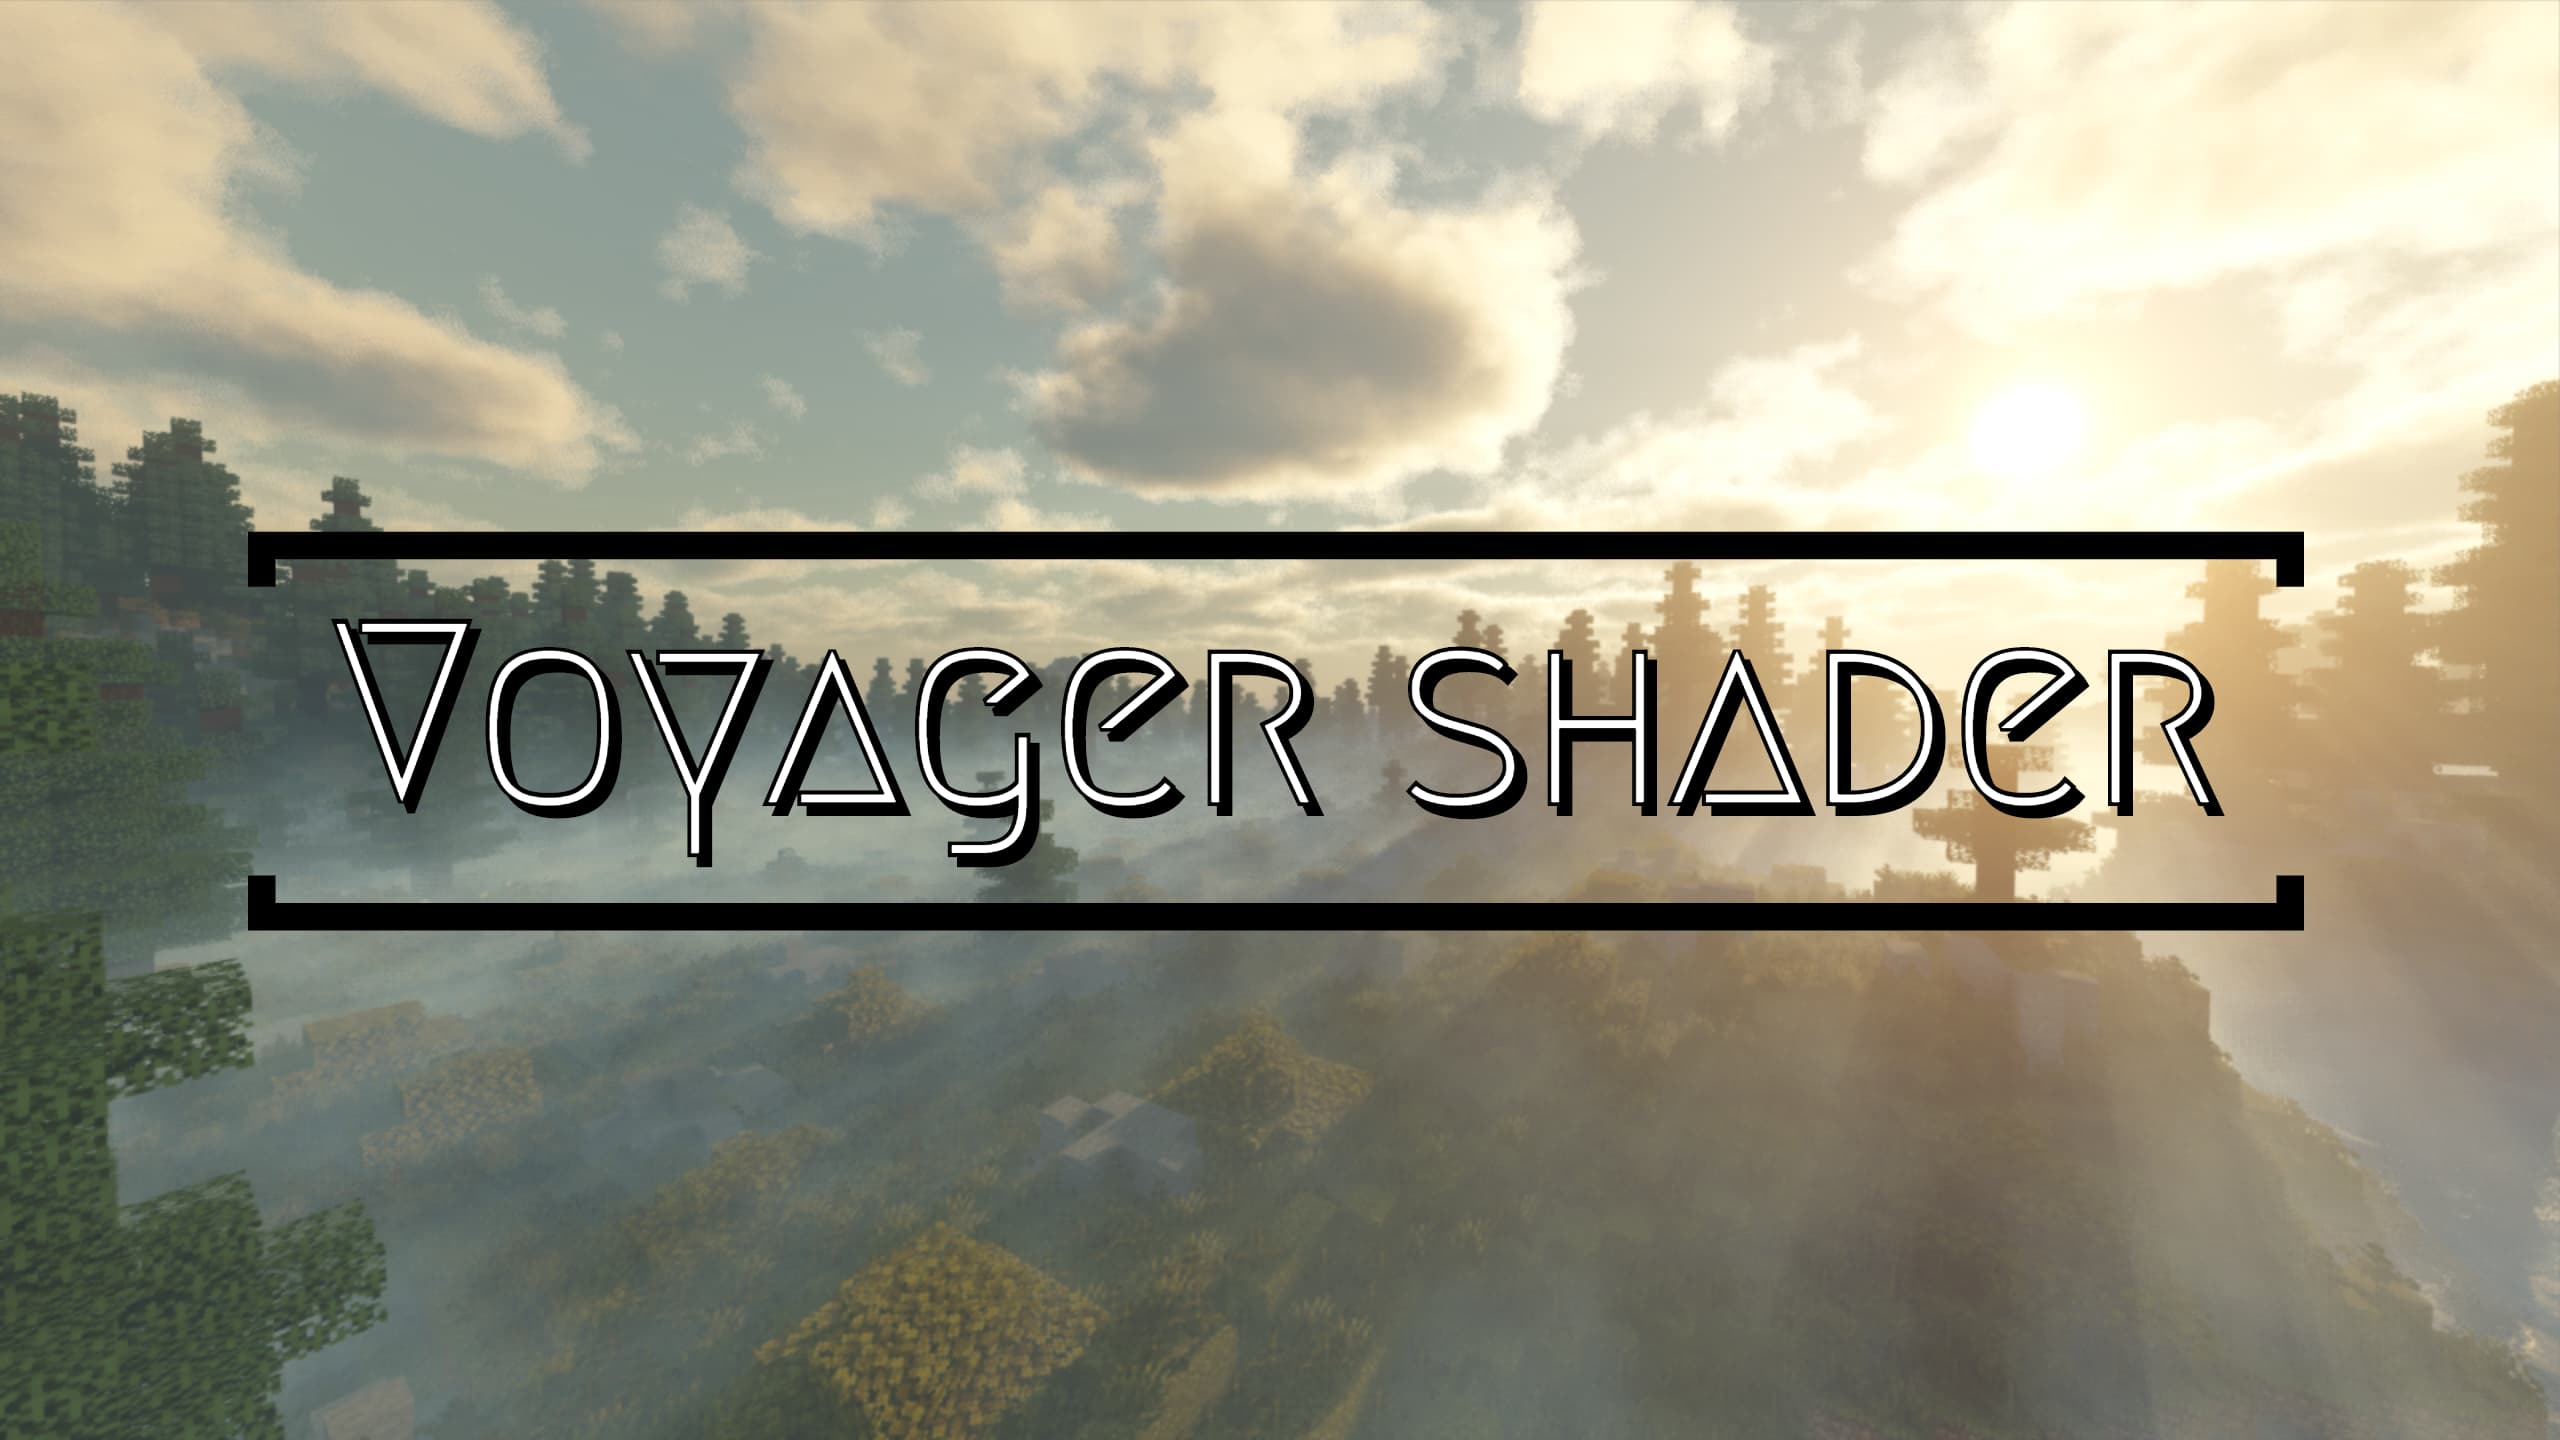 Voyager shader 2.0